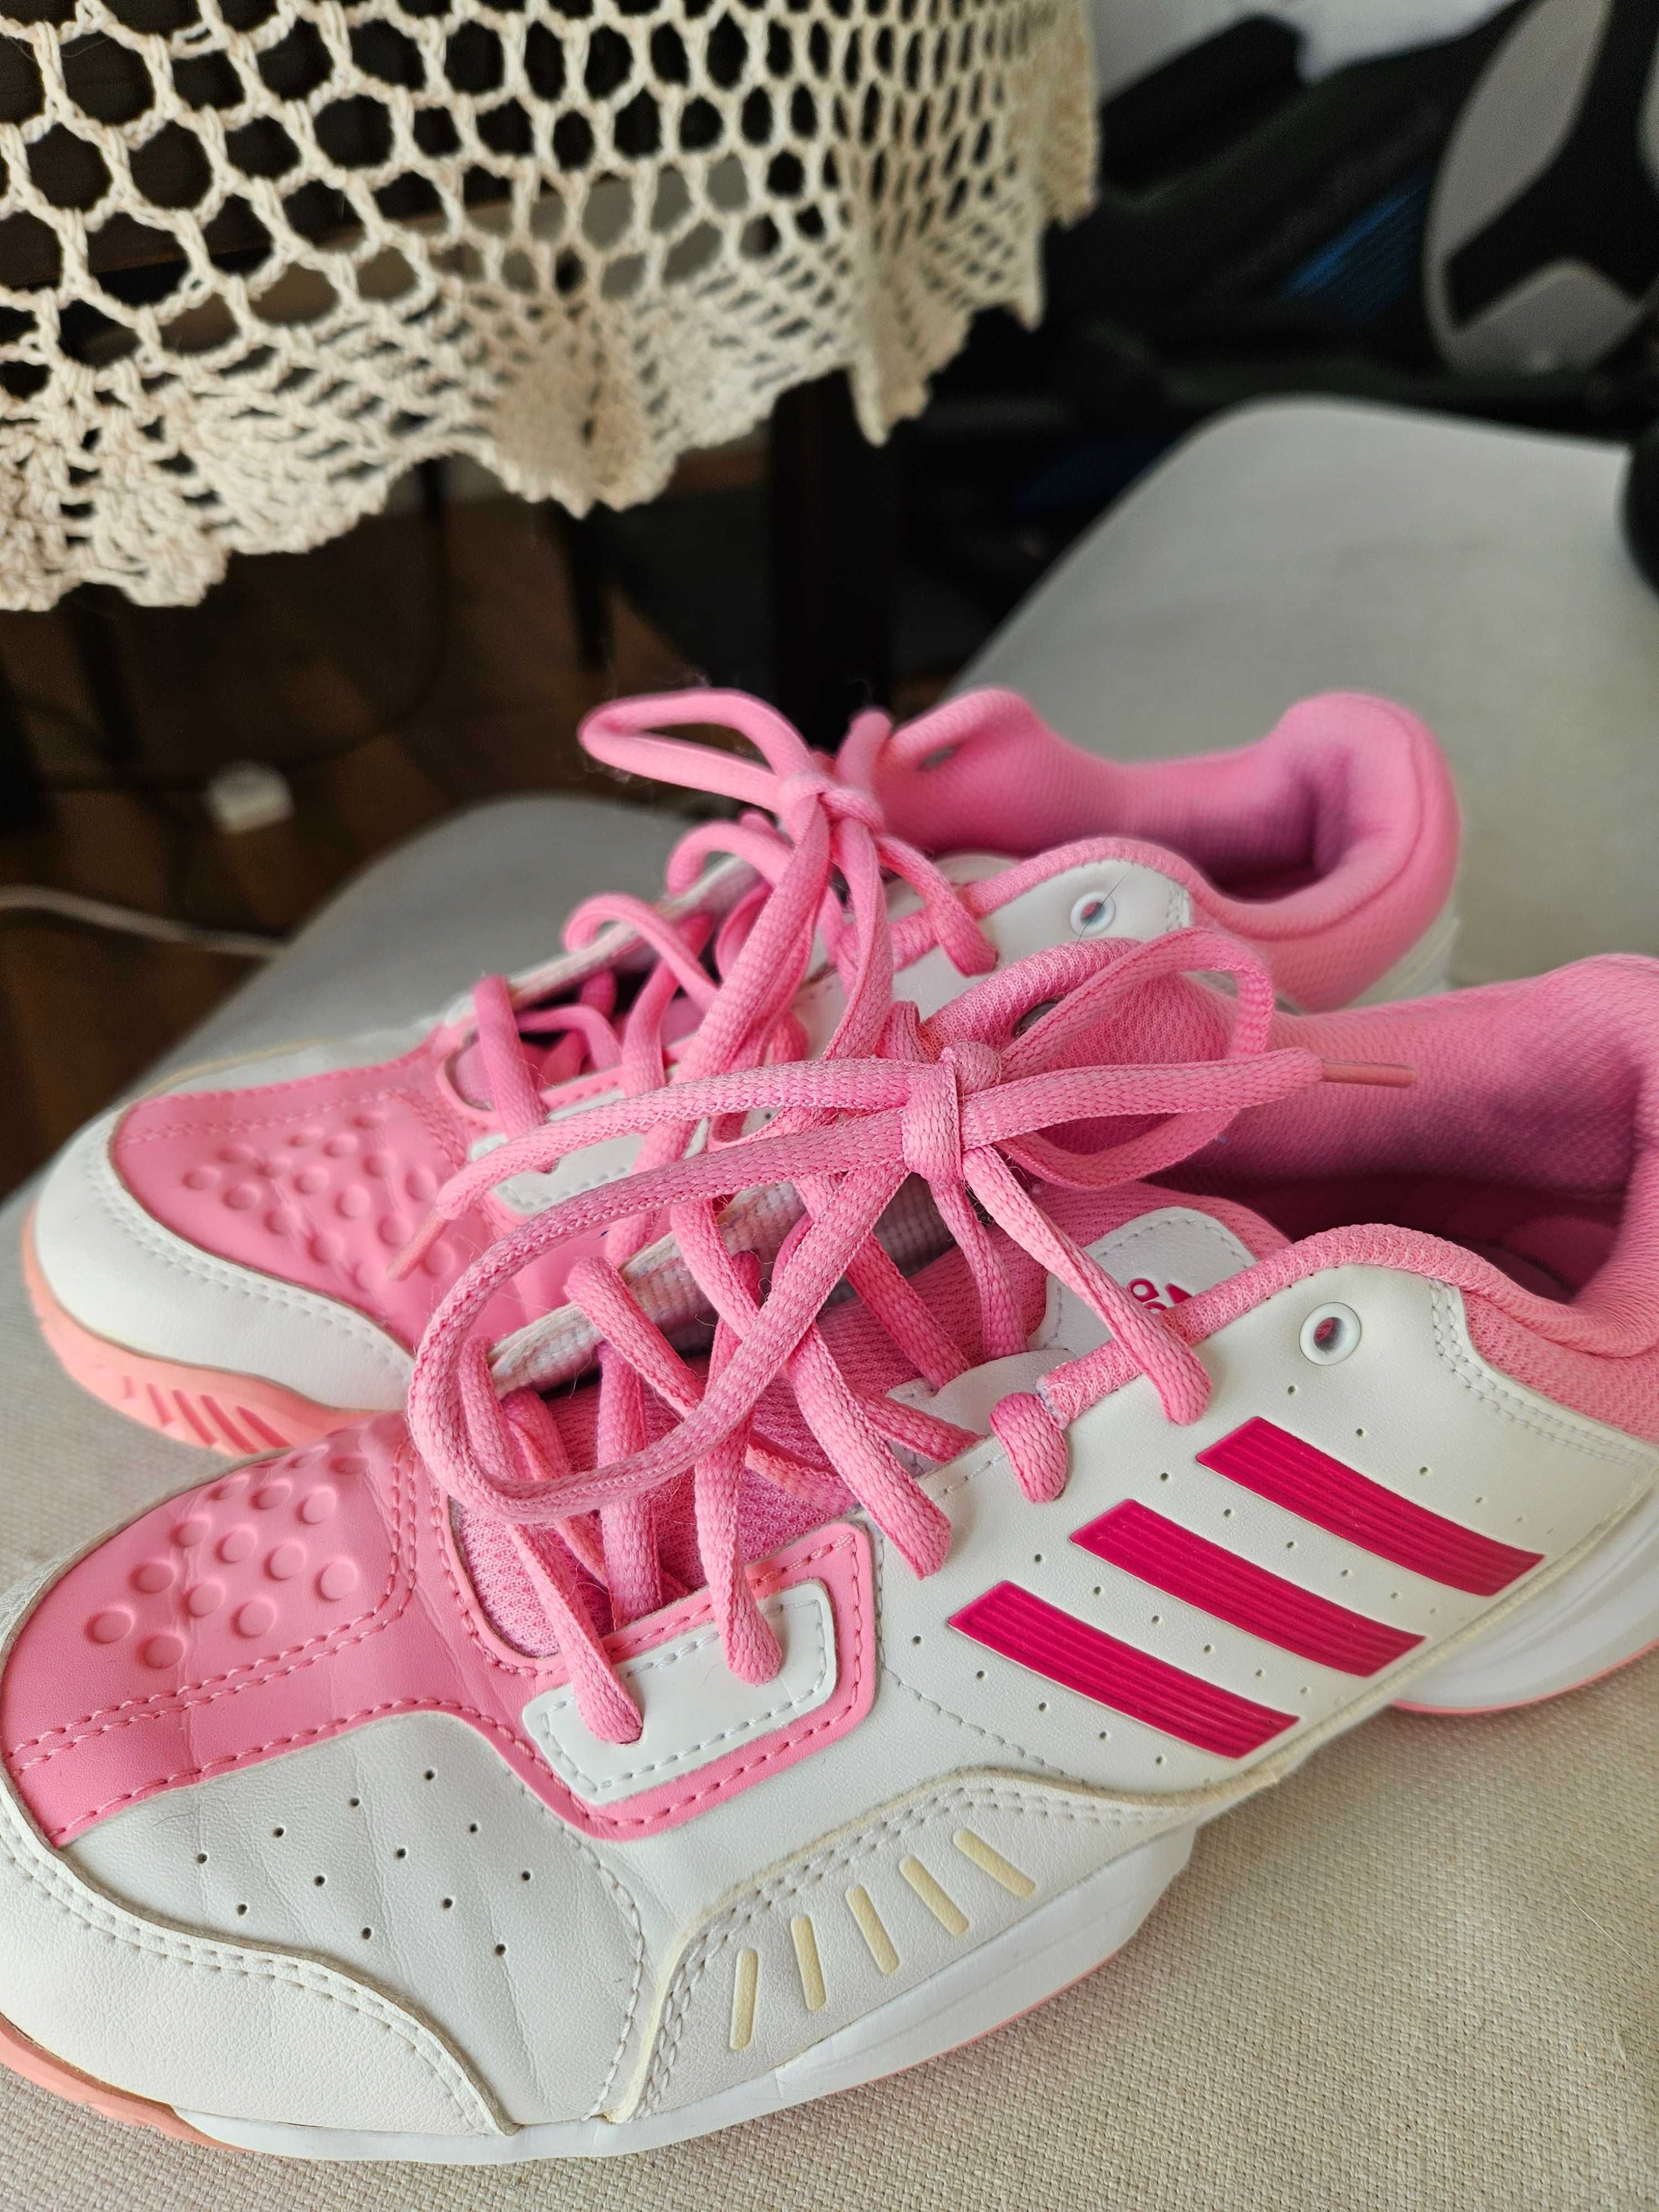 Adidas buty sportowe damskie